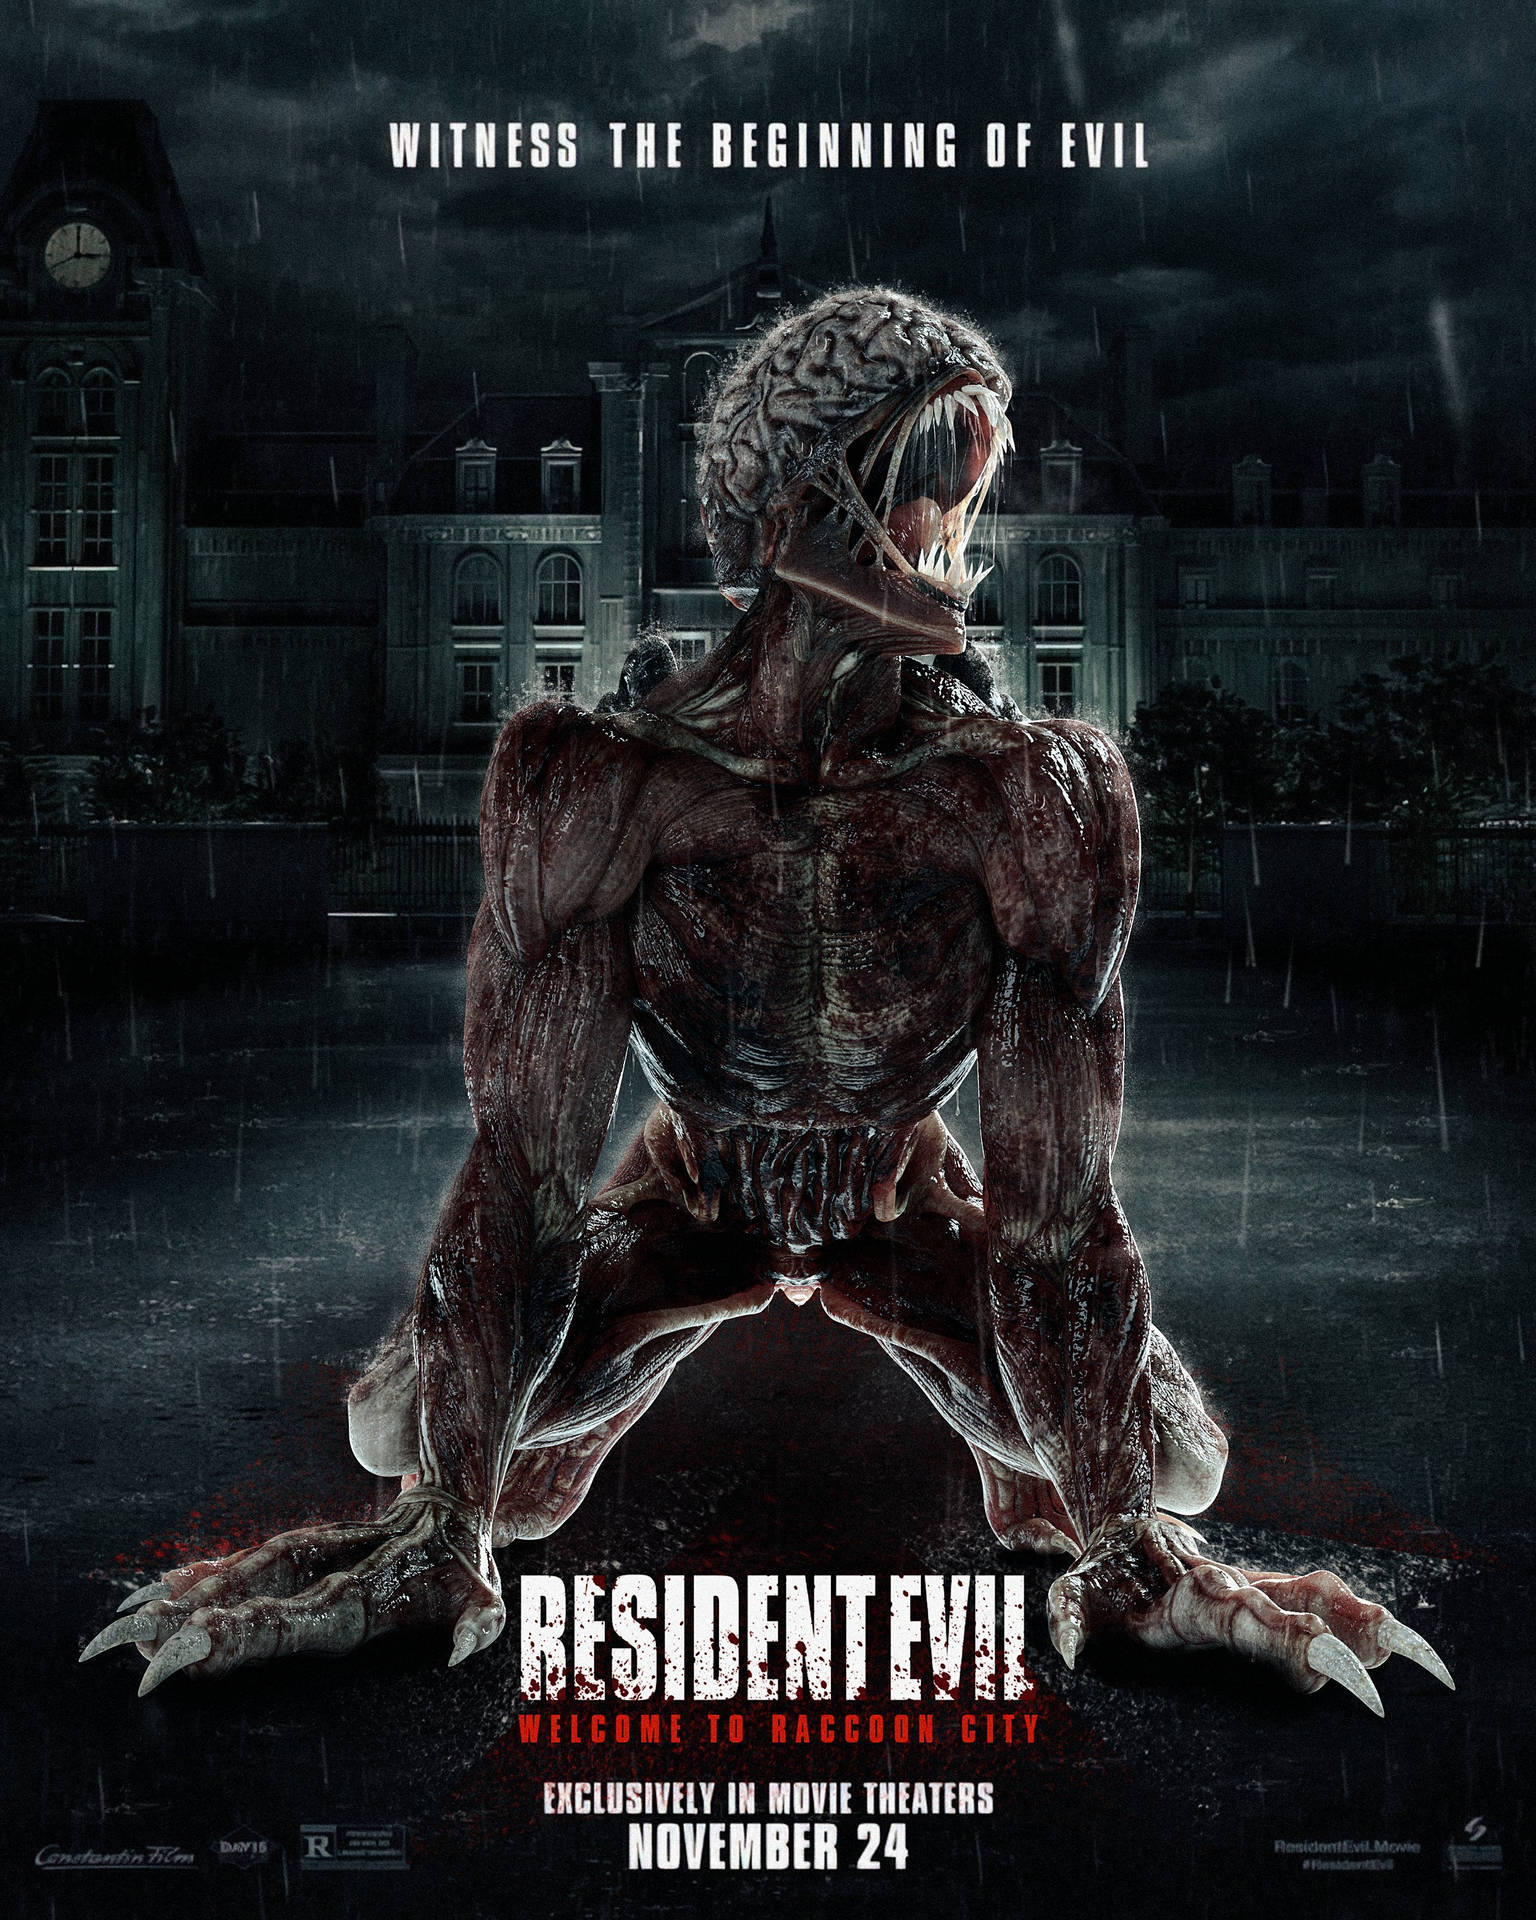 Residentevil - Willkommen In Raccoon City Licker Zombie. Wallpaper